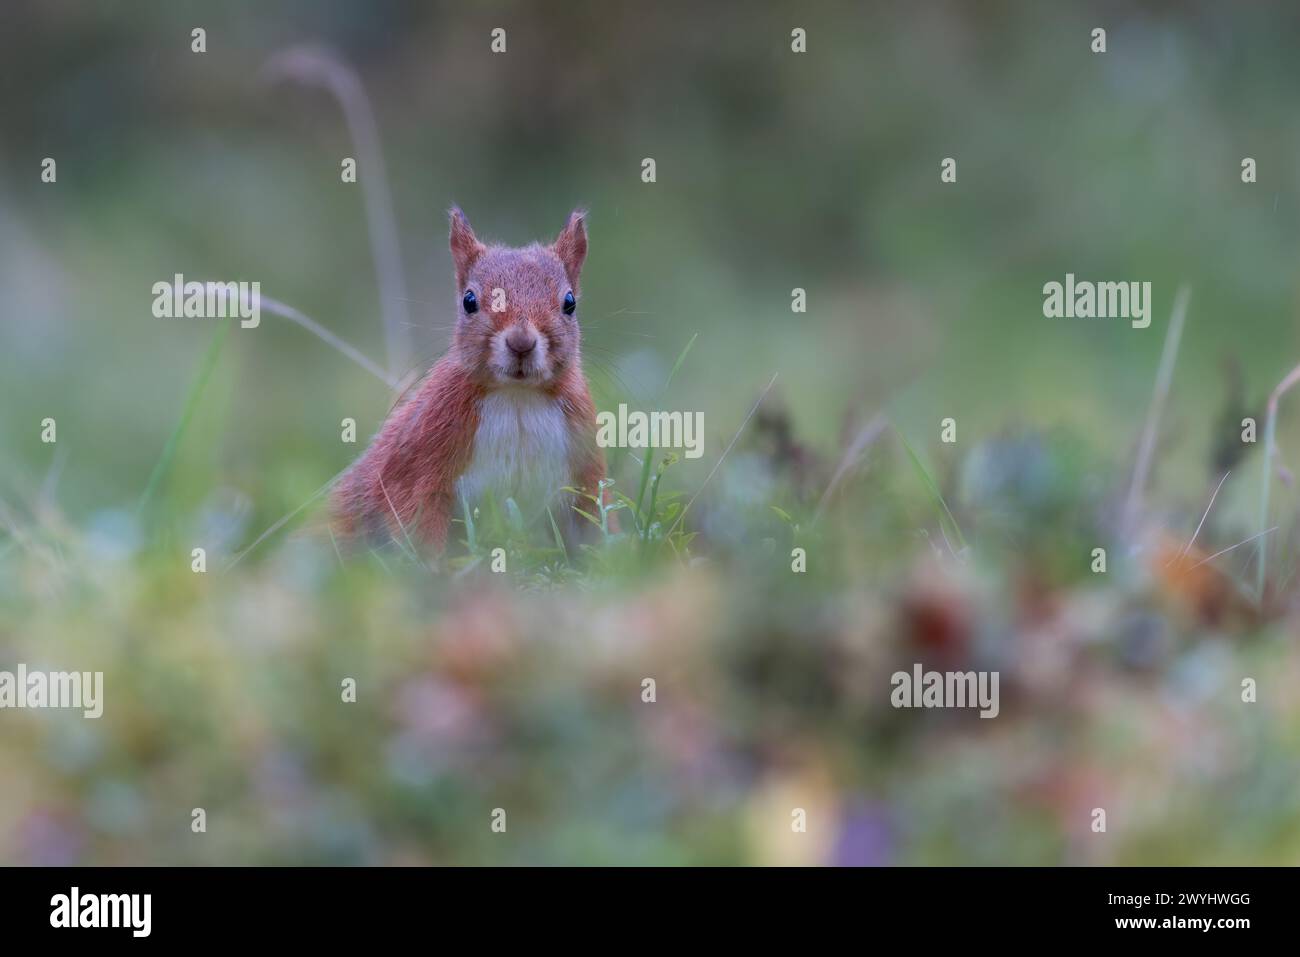 Écureuil roux [ Sciurus vulgaris ] sur le sol avec un feuillage hors foyer tout autour, Perthshire, Écosse, Royaume-Uni Banque D'Images